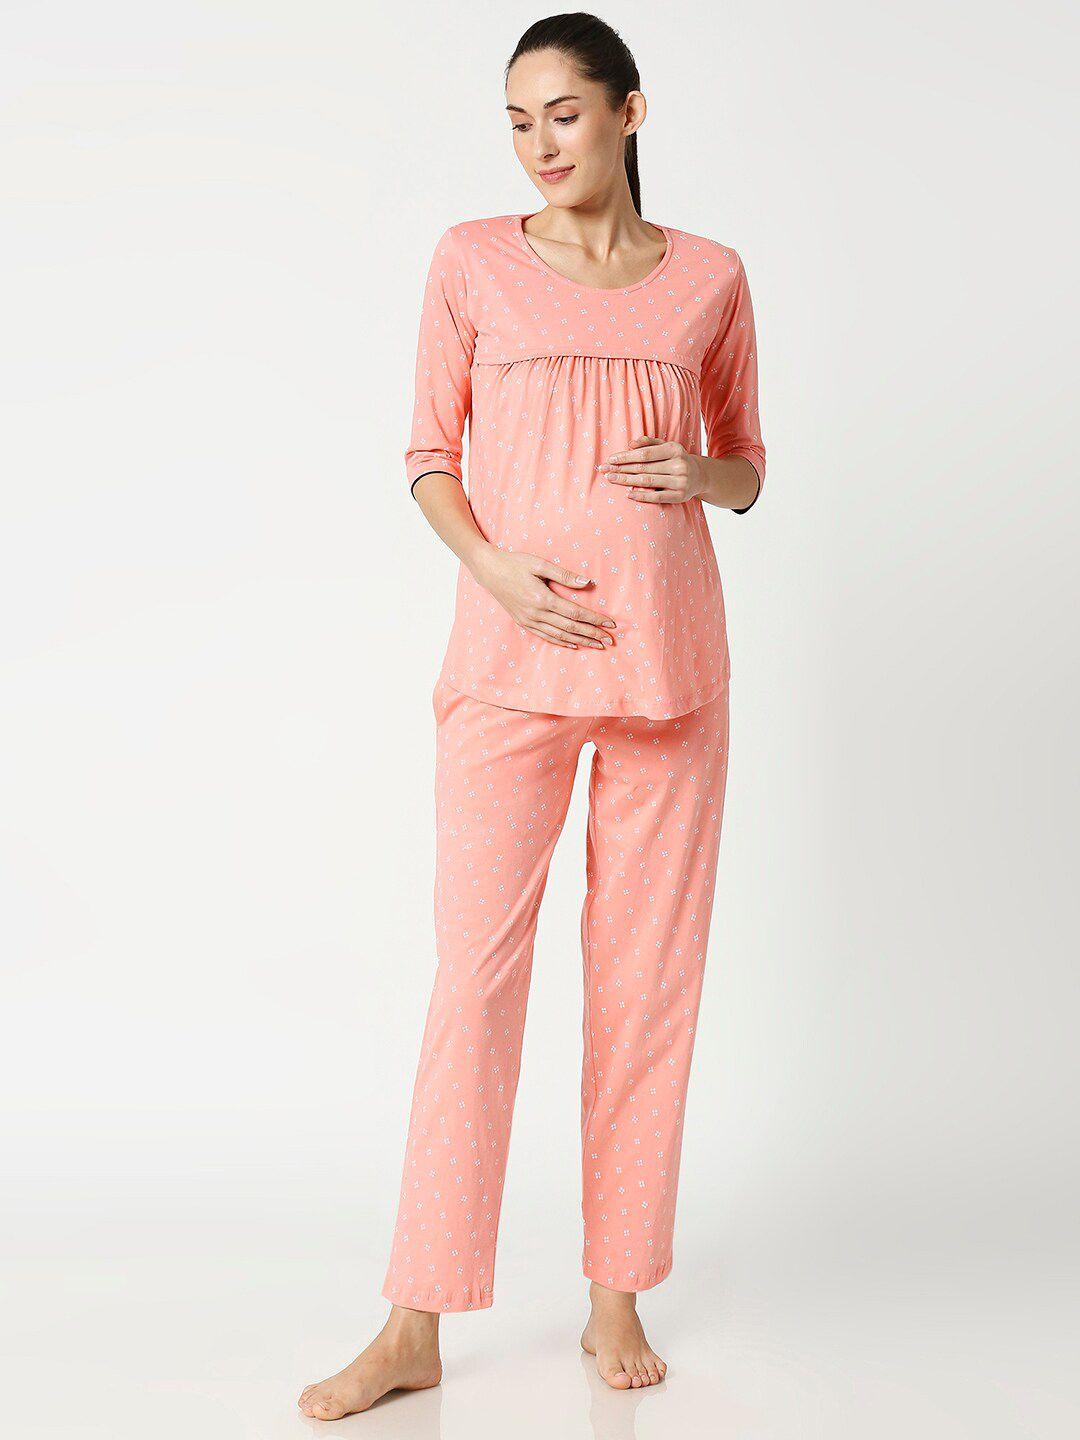 av2 women peach-coloured & white printed maternity/nursing night suit